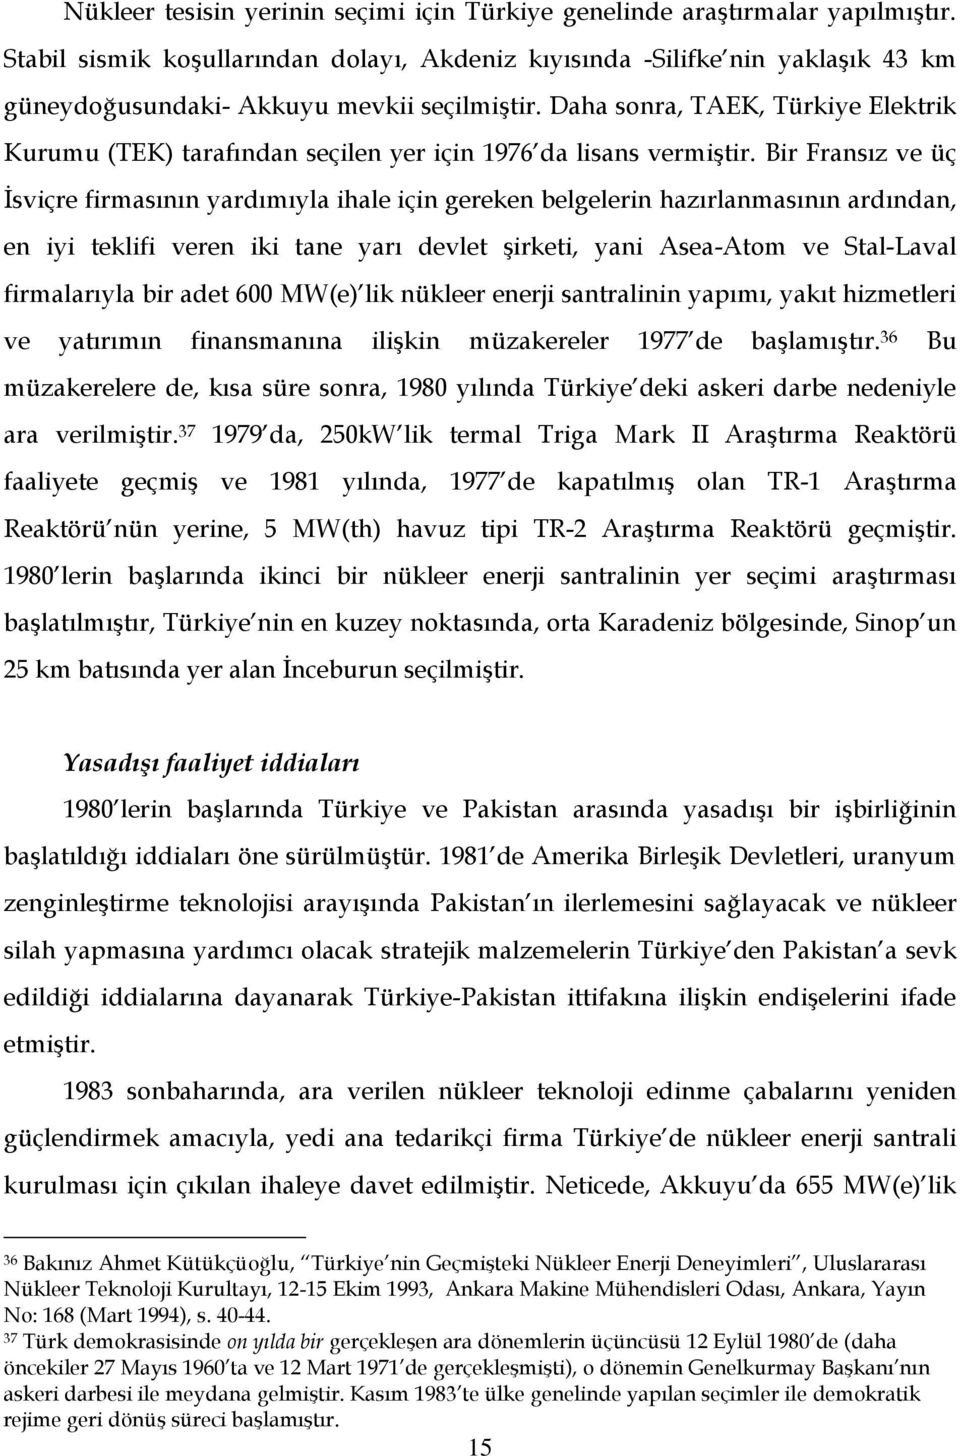 Daha sonra, TAEK, Türkiye Elektrik Kurumu (TEK) tarafından seçilen yer için 1976 da lisans vermiştir.